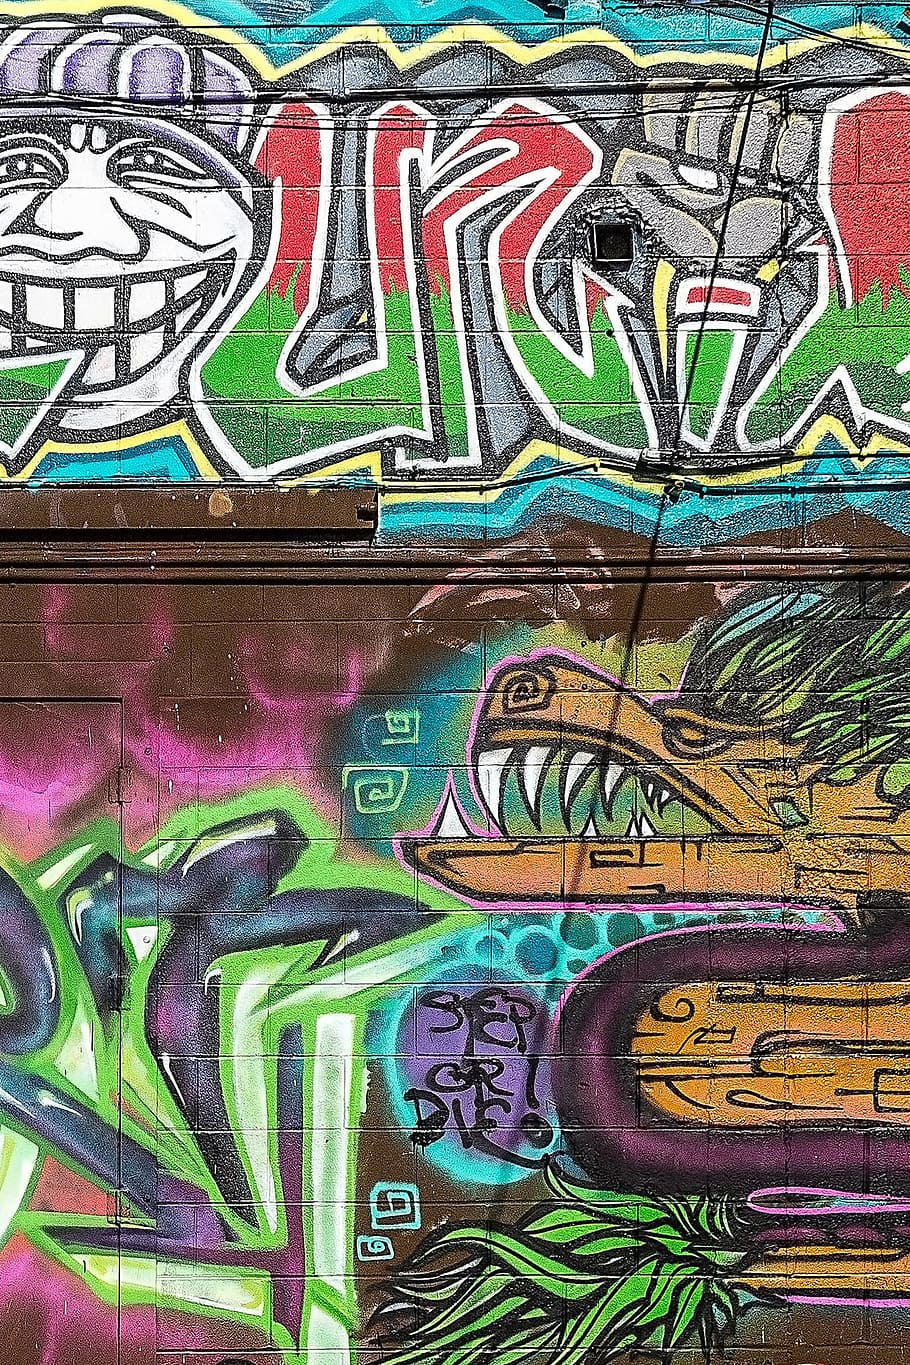 Graffiti, Background, Grunge, Street Art, graffiti wall, graffiti art, artistic, painted, spray paint, art